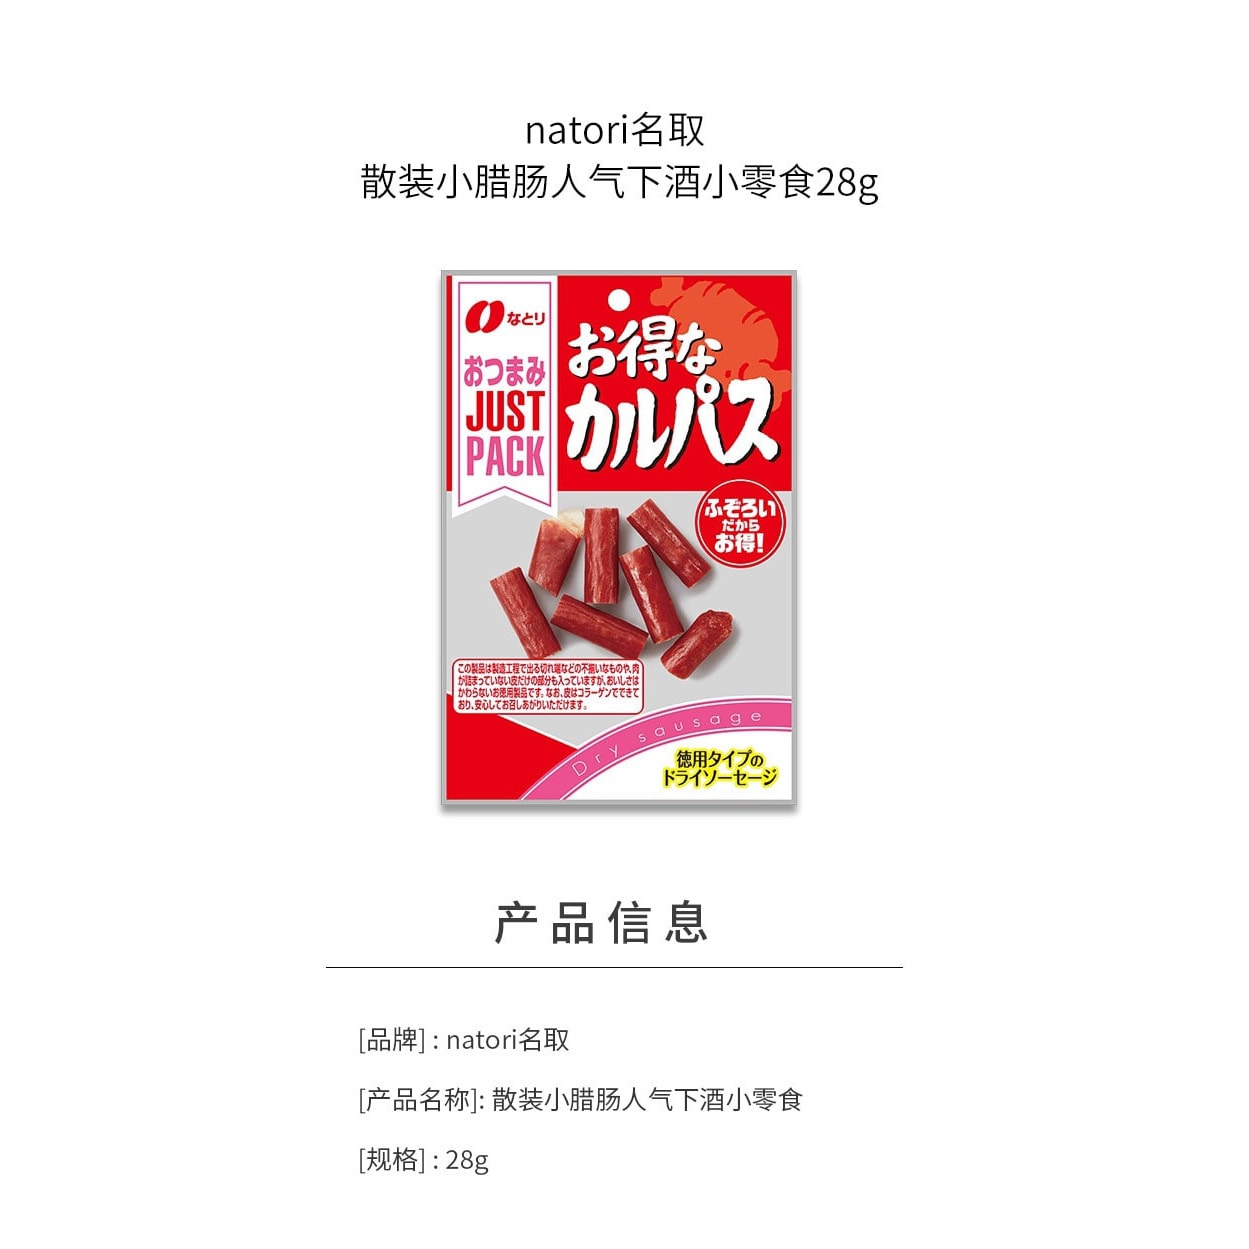 【日本直效郵件】NATORI 散裝小臘腸人氣下酒小點心28g